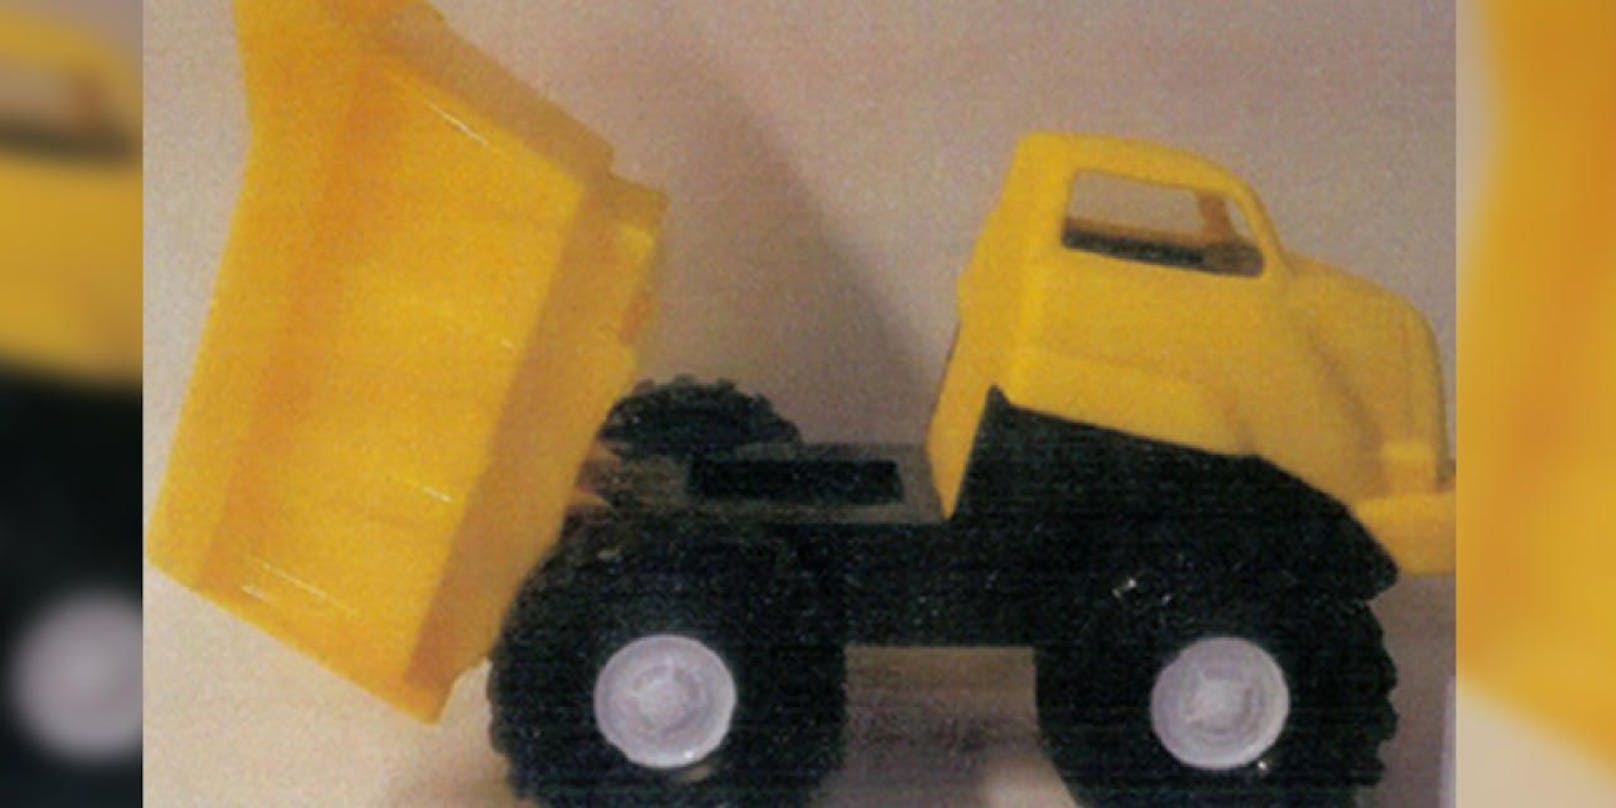 Spielzeugauto &quot;LKW SAM&quot; in Gelb und Schwarz wird zurückgerufen